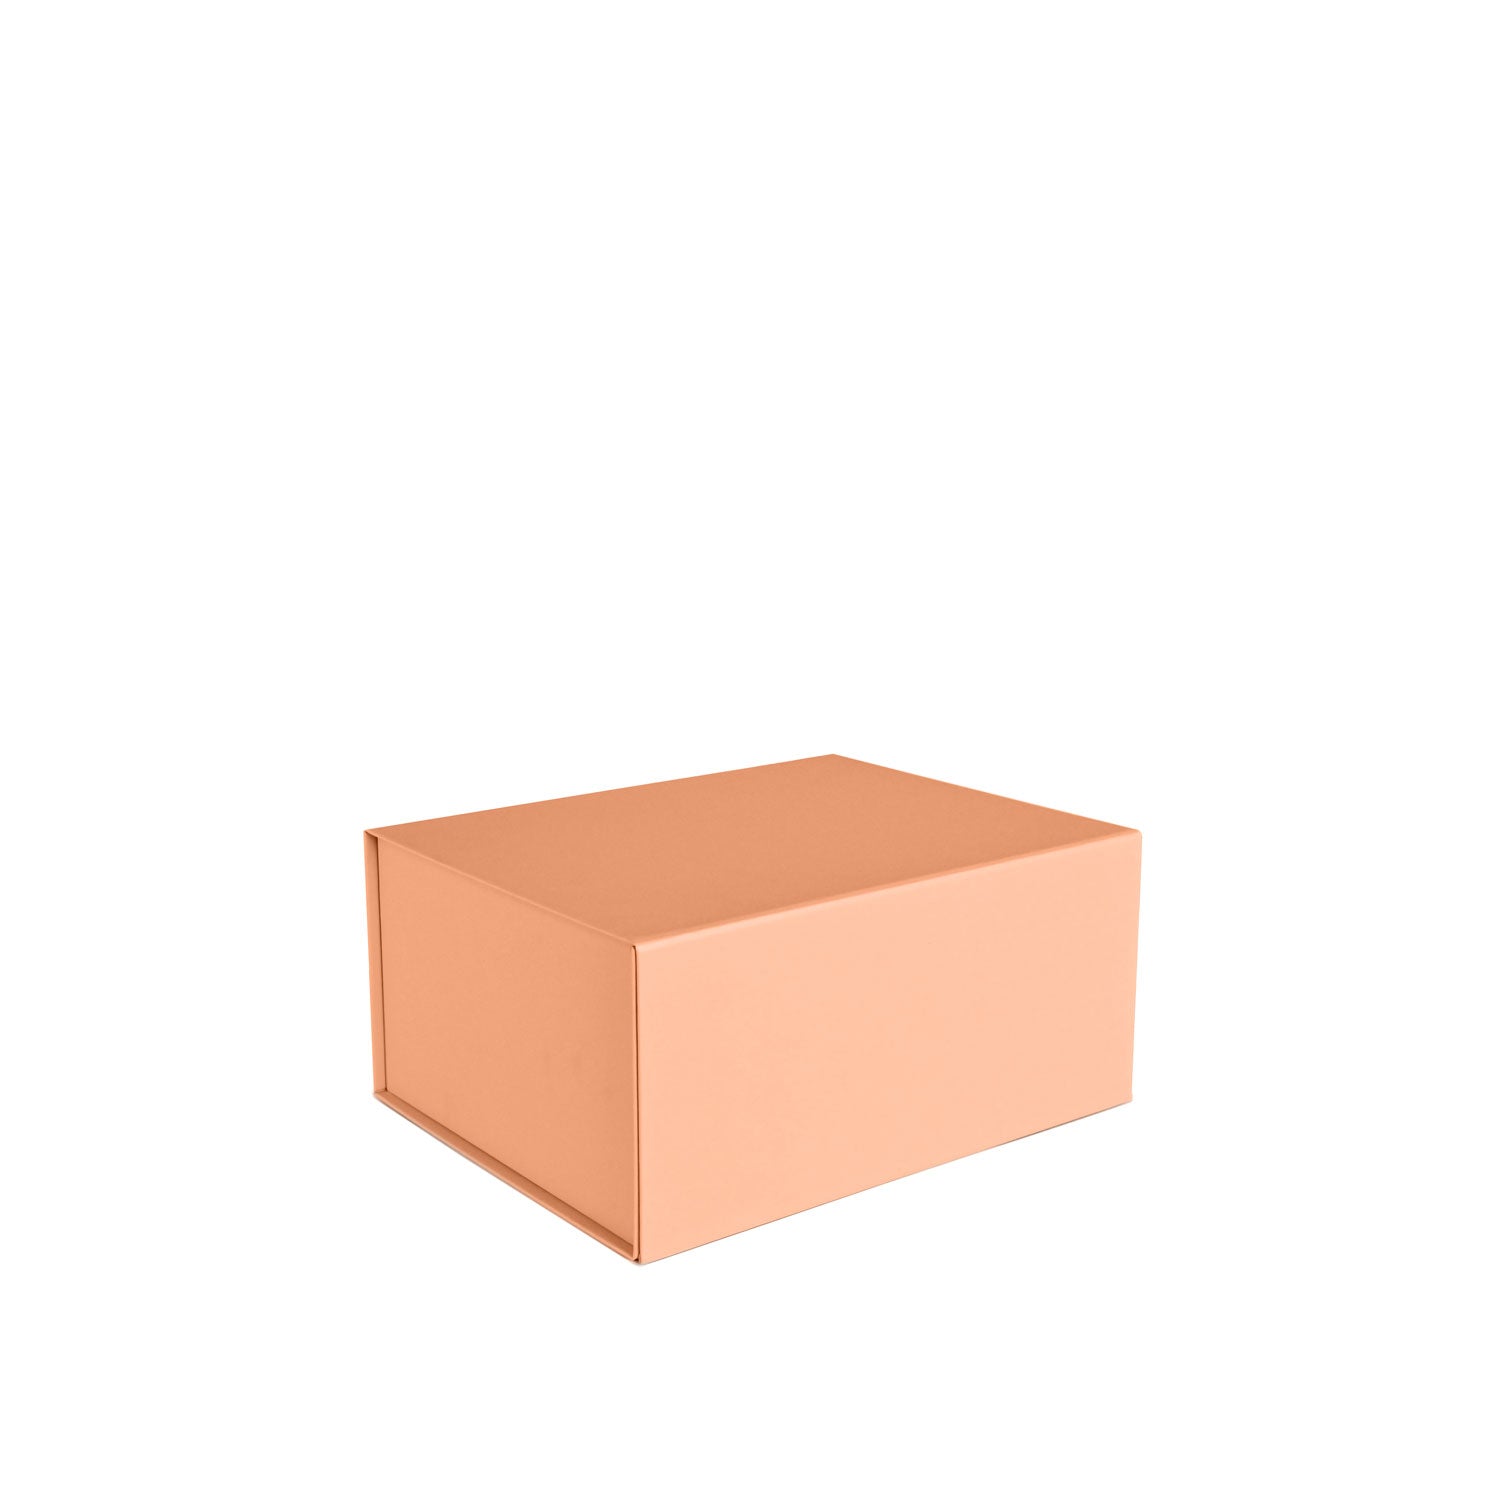 High Quality Peach Medium Gift Box - NEON Packaging